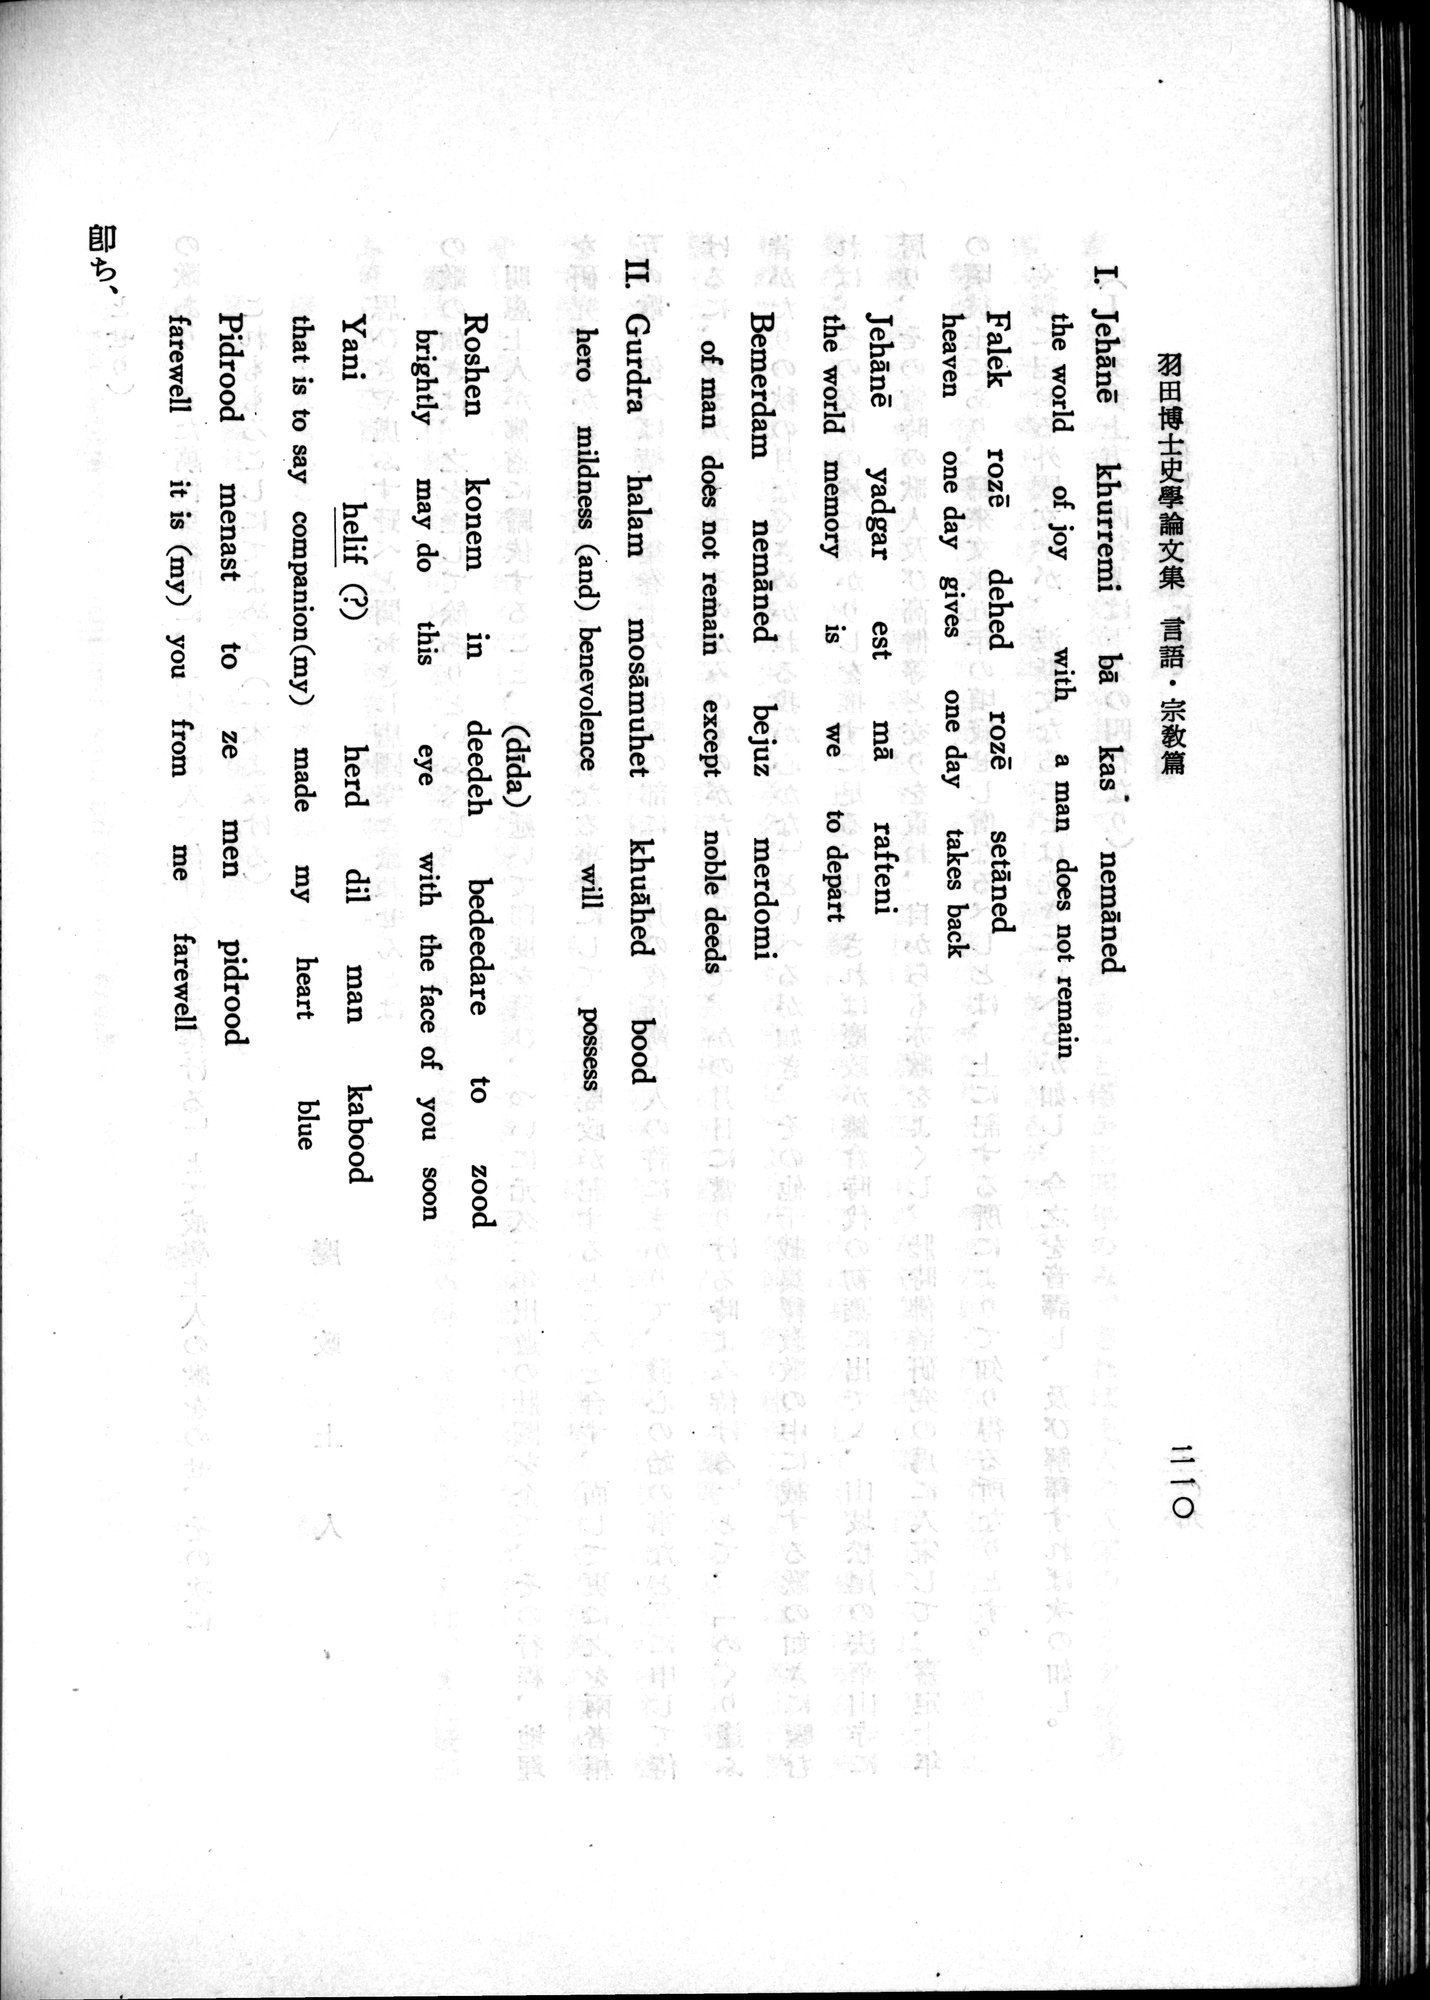 羽田博士史学論文集 : vol.2 / Page 272 (Grayscale High Resolution Image)